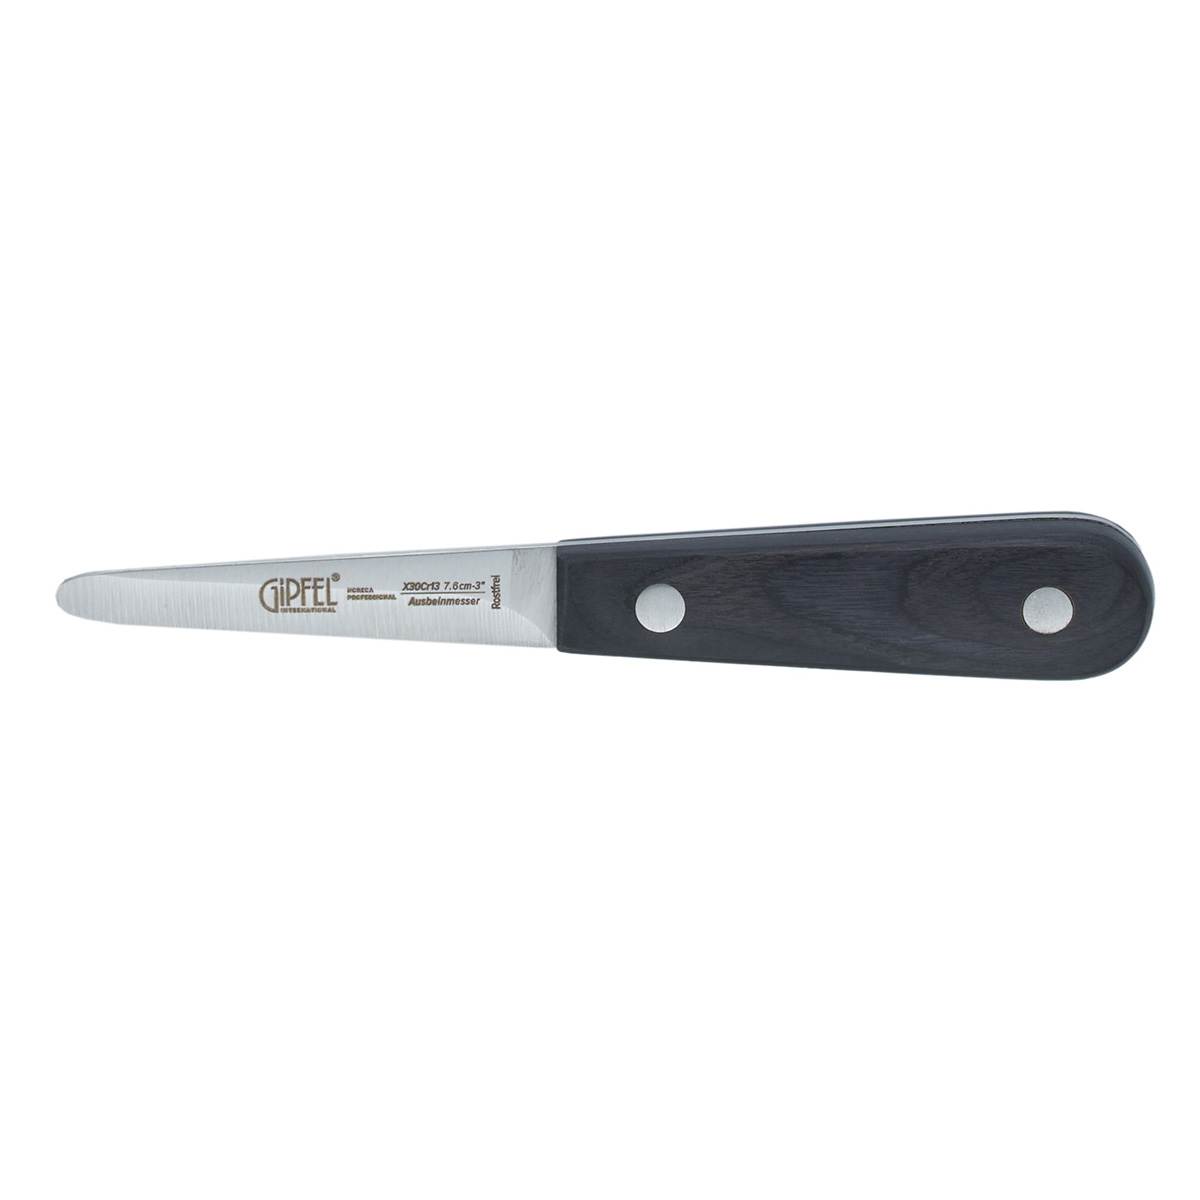 Нож для устриц Gipfel Horeca Pro 50587 16 см нож для устриц gipfel horeca pro 50587 16 см